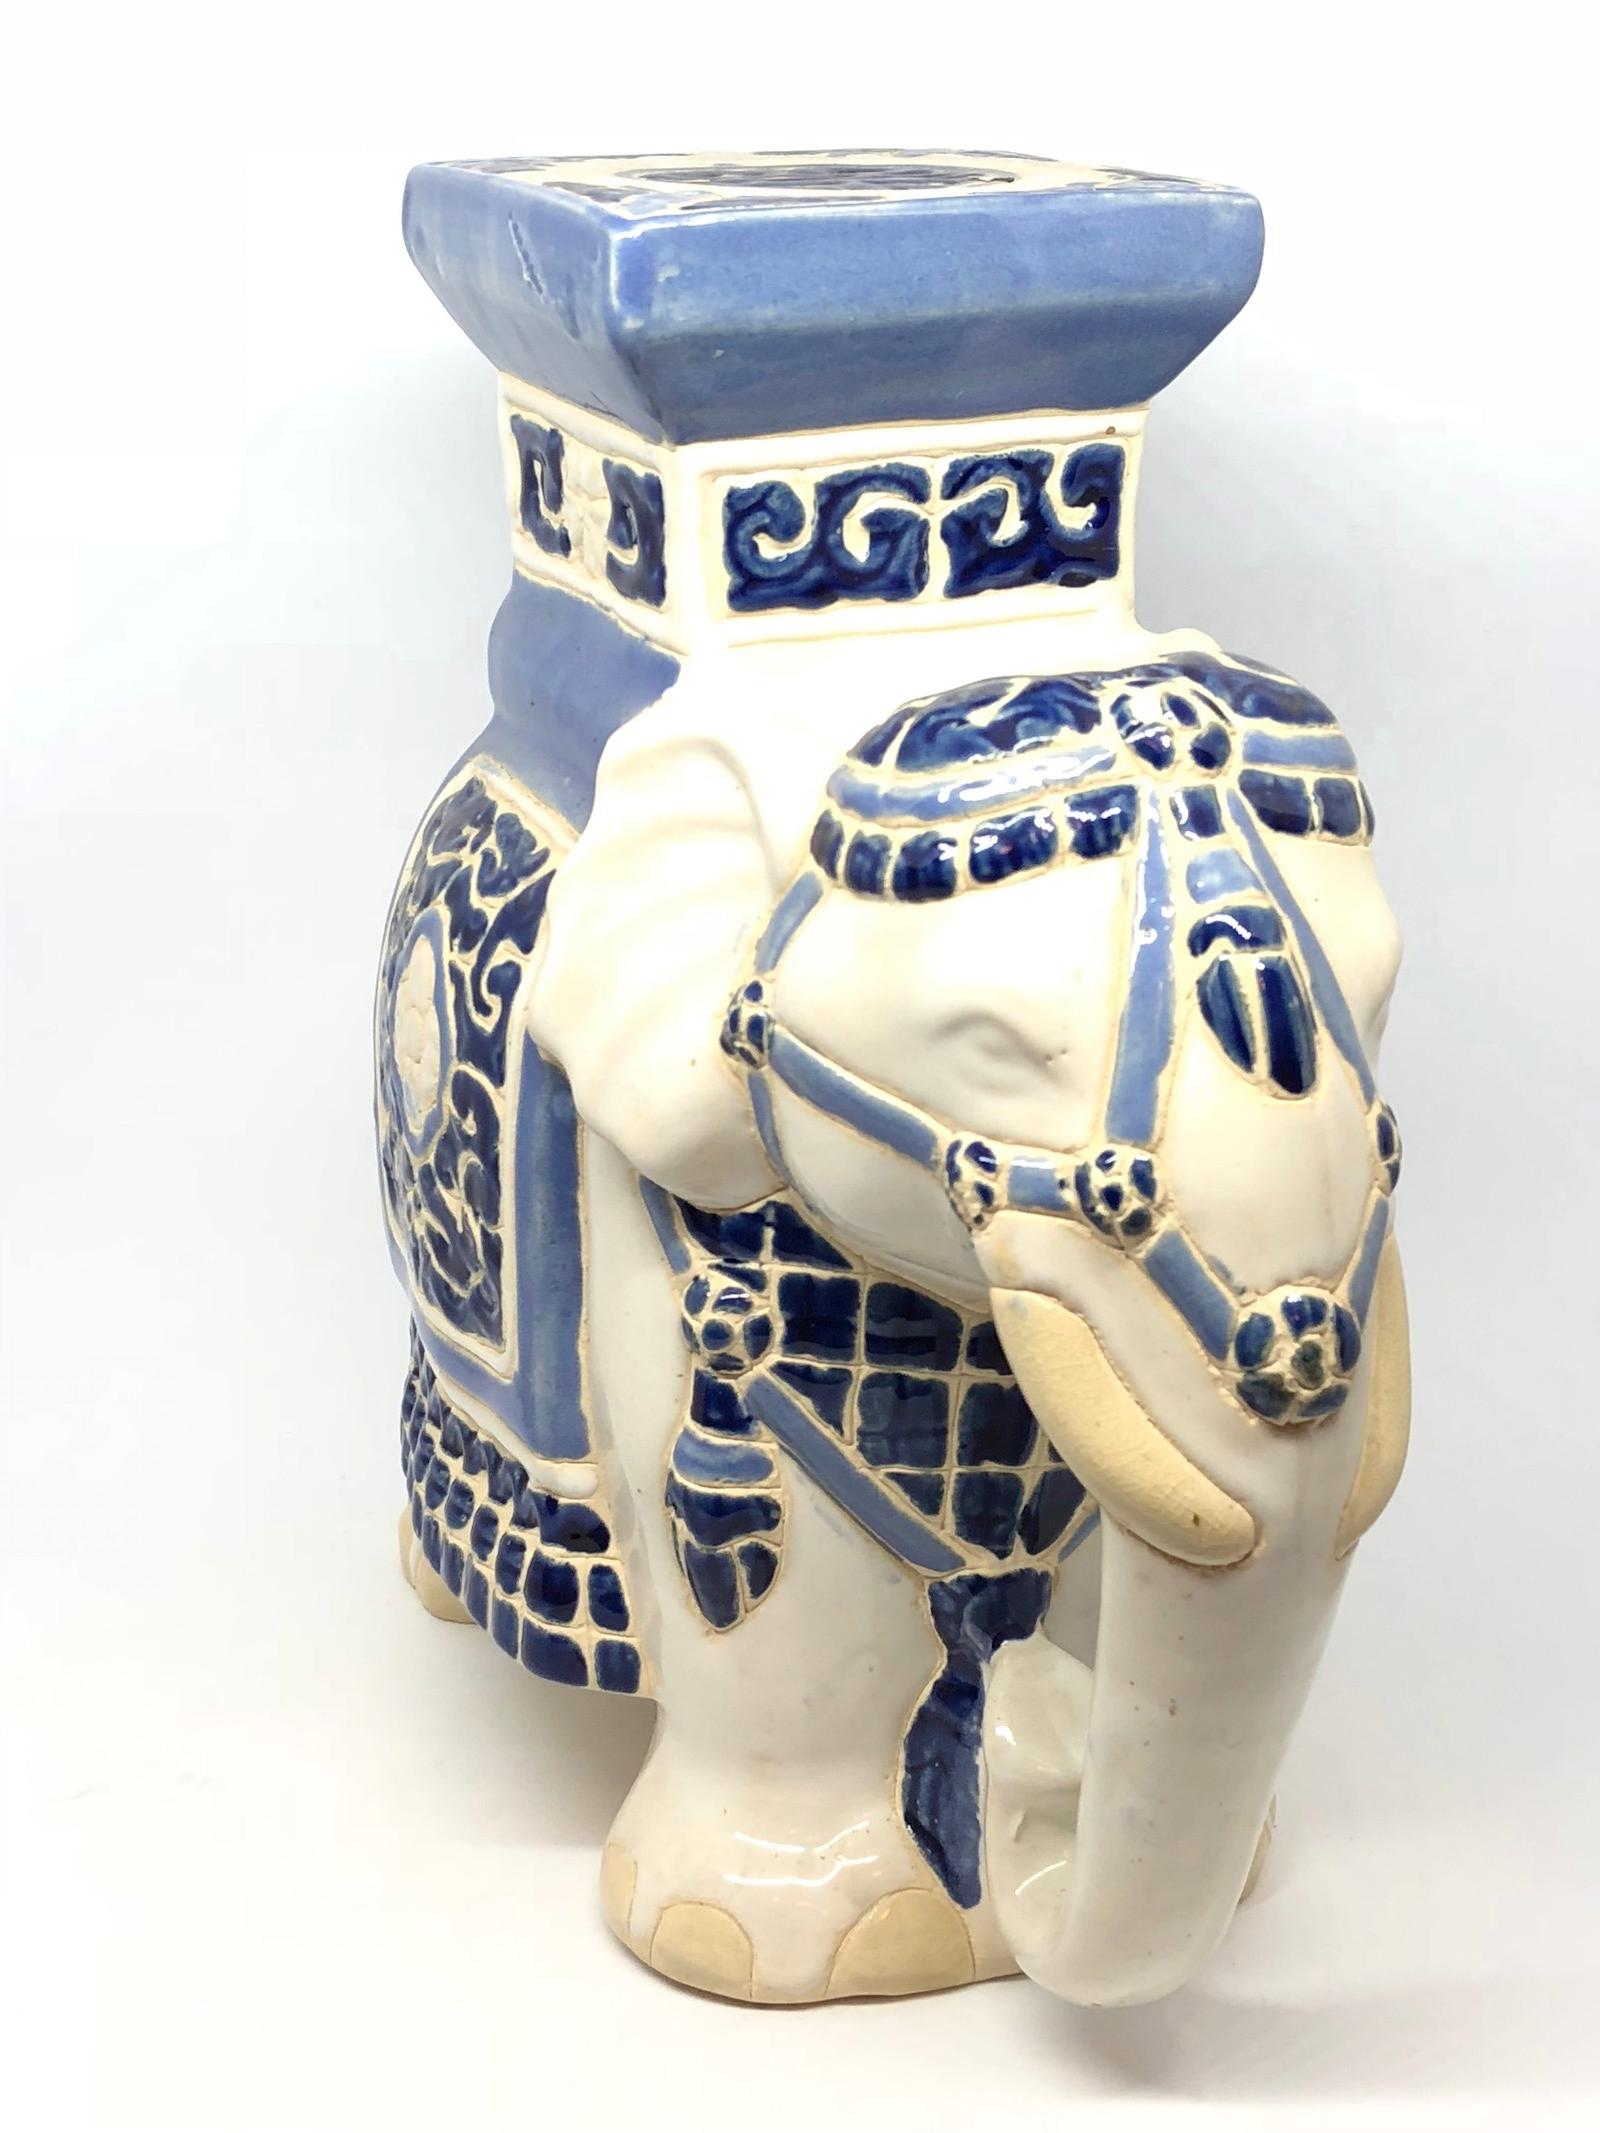 Petite Mitte des 20. Jahrhunderts glasierte Keramik Elefant Blumentopf Sitz. Handgefertigt aus Keramik. Eine schöne Ergänzung für Ihr Haus, Ihre Terrasse oder Ihren Garten.
 